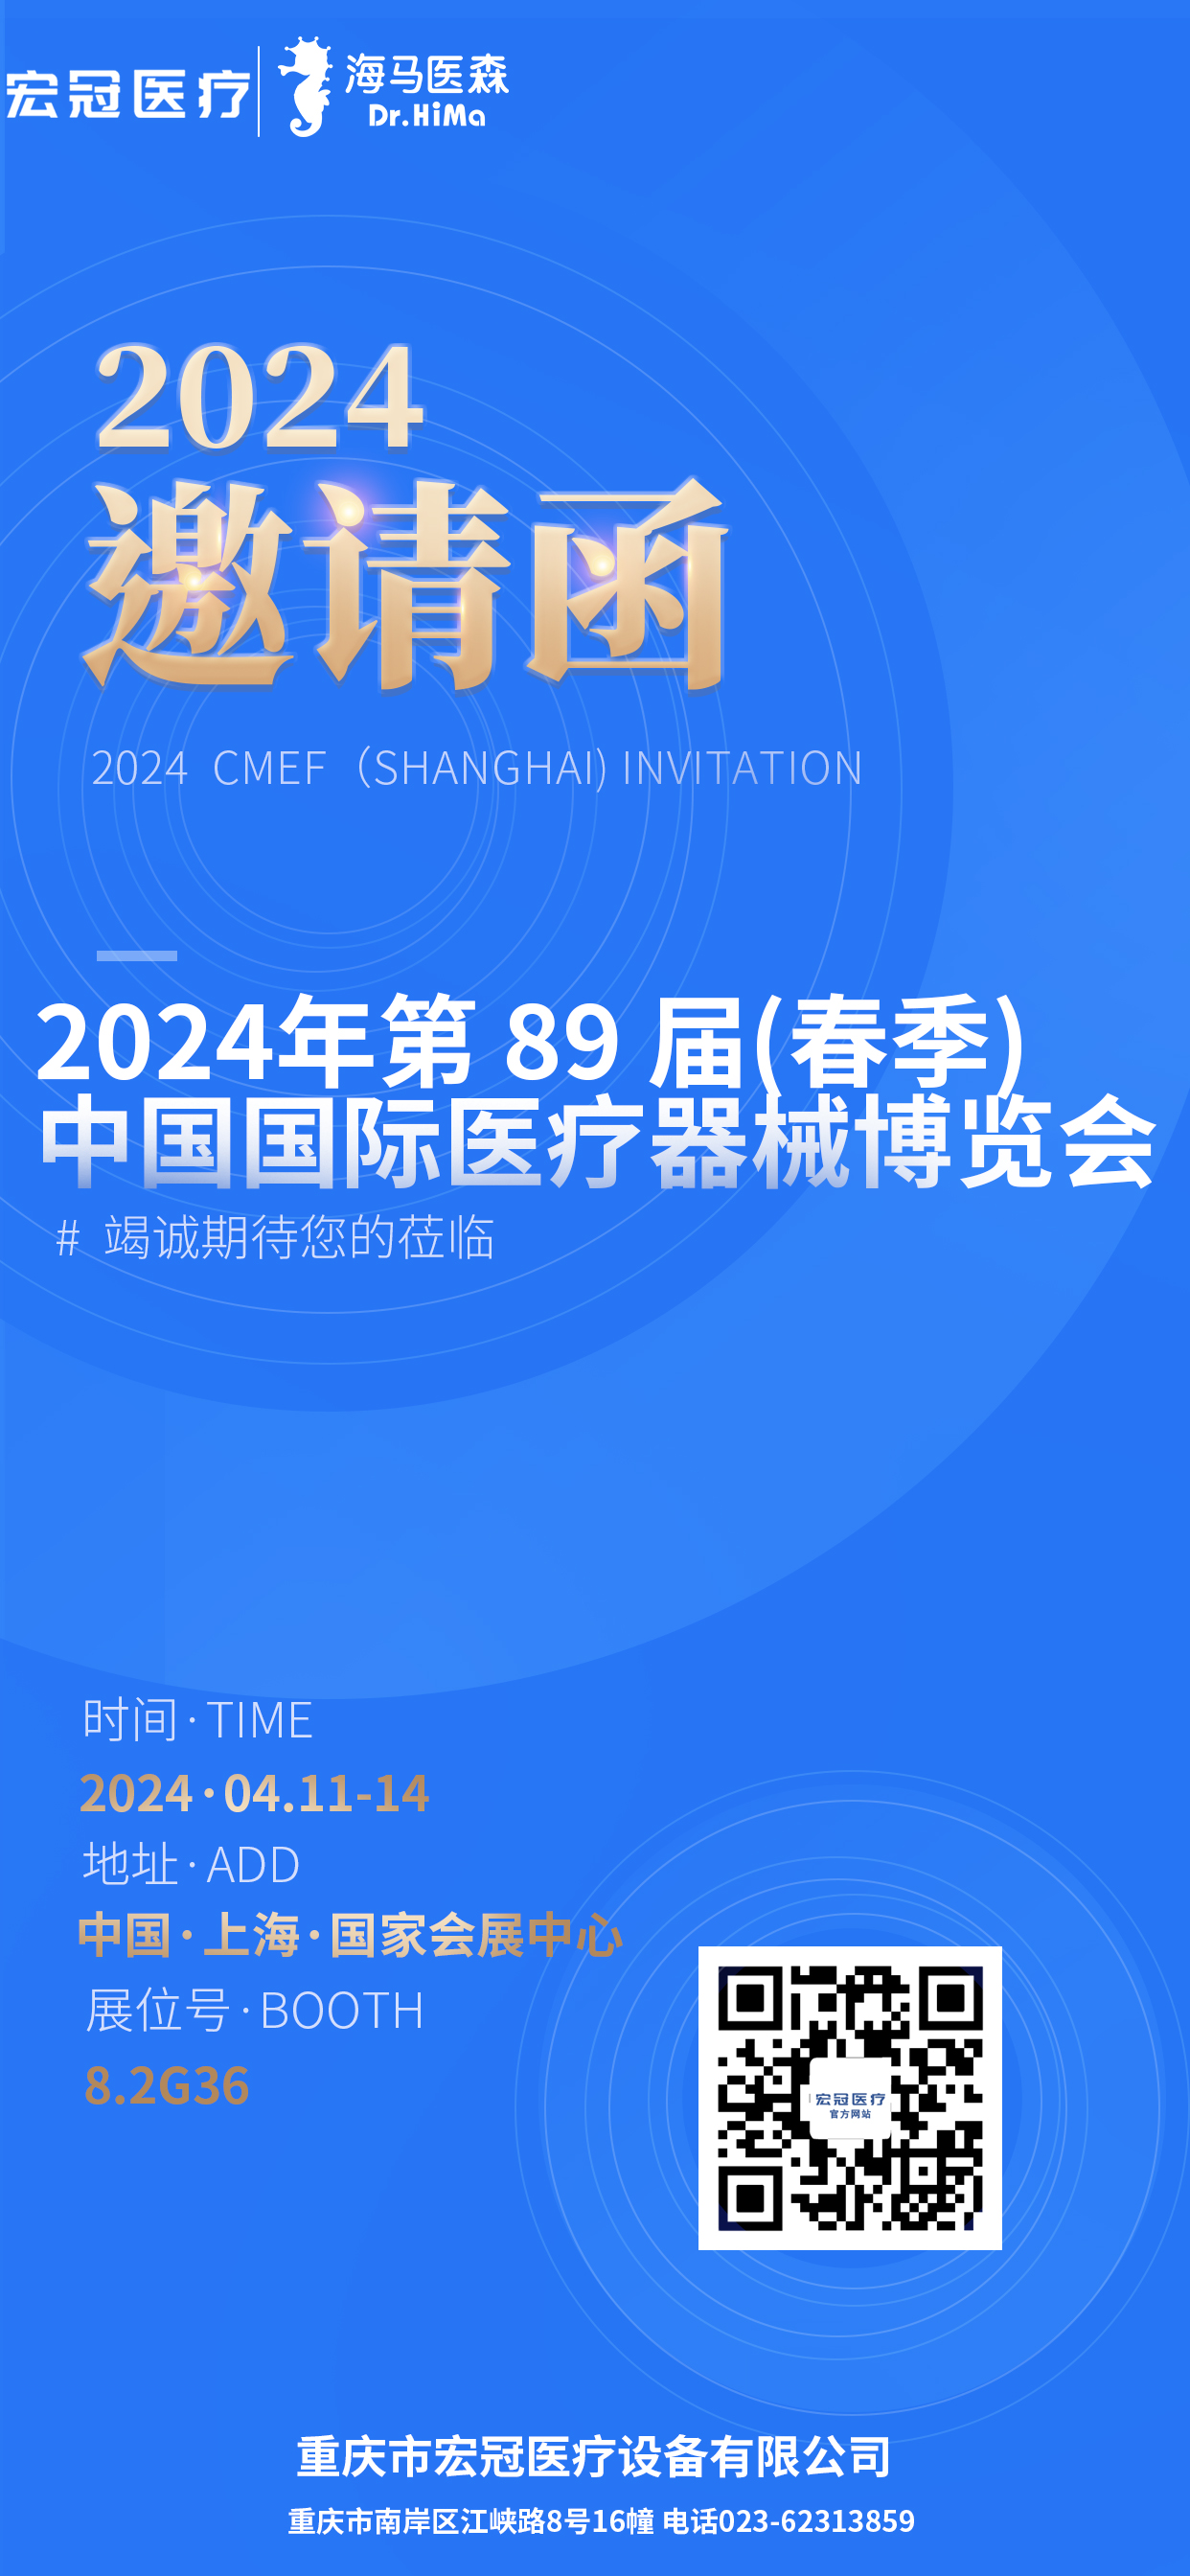 Invitación para 2024 CMEF（Shanghai)